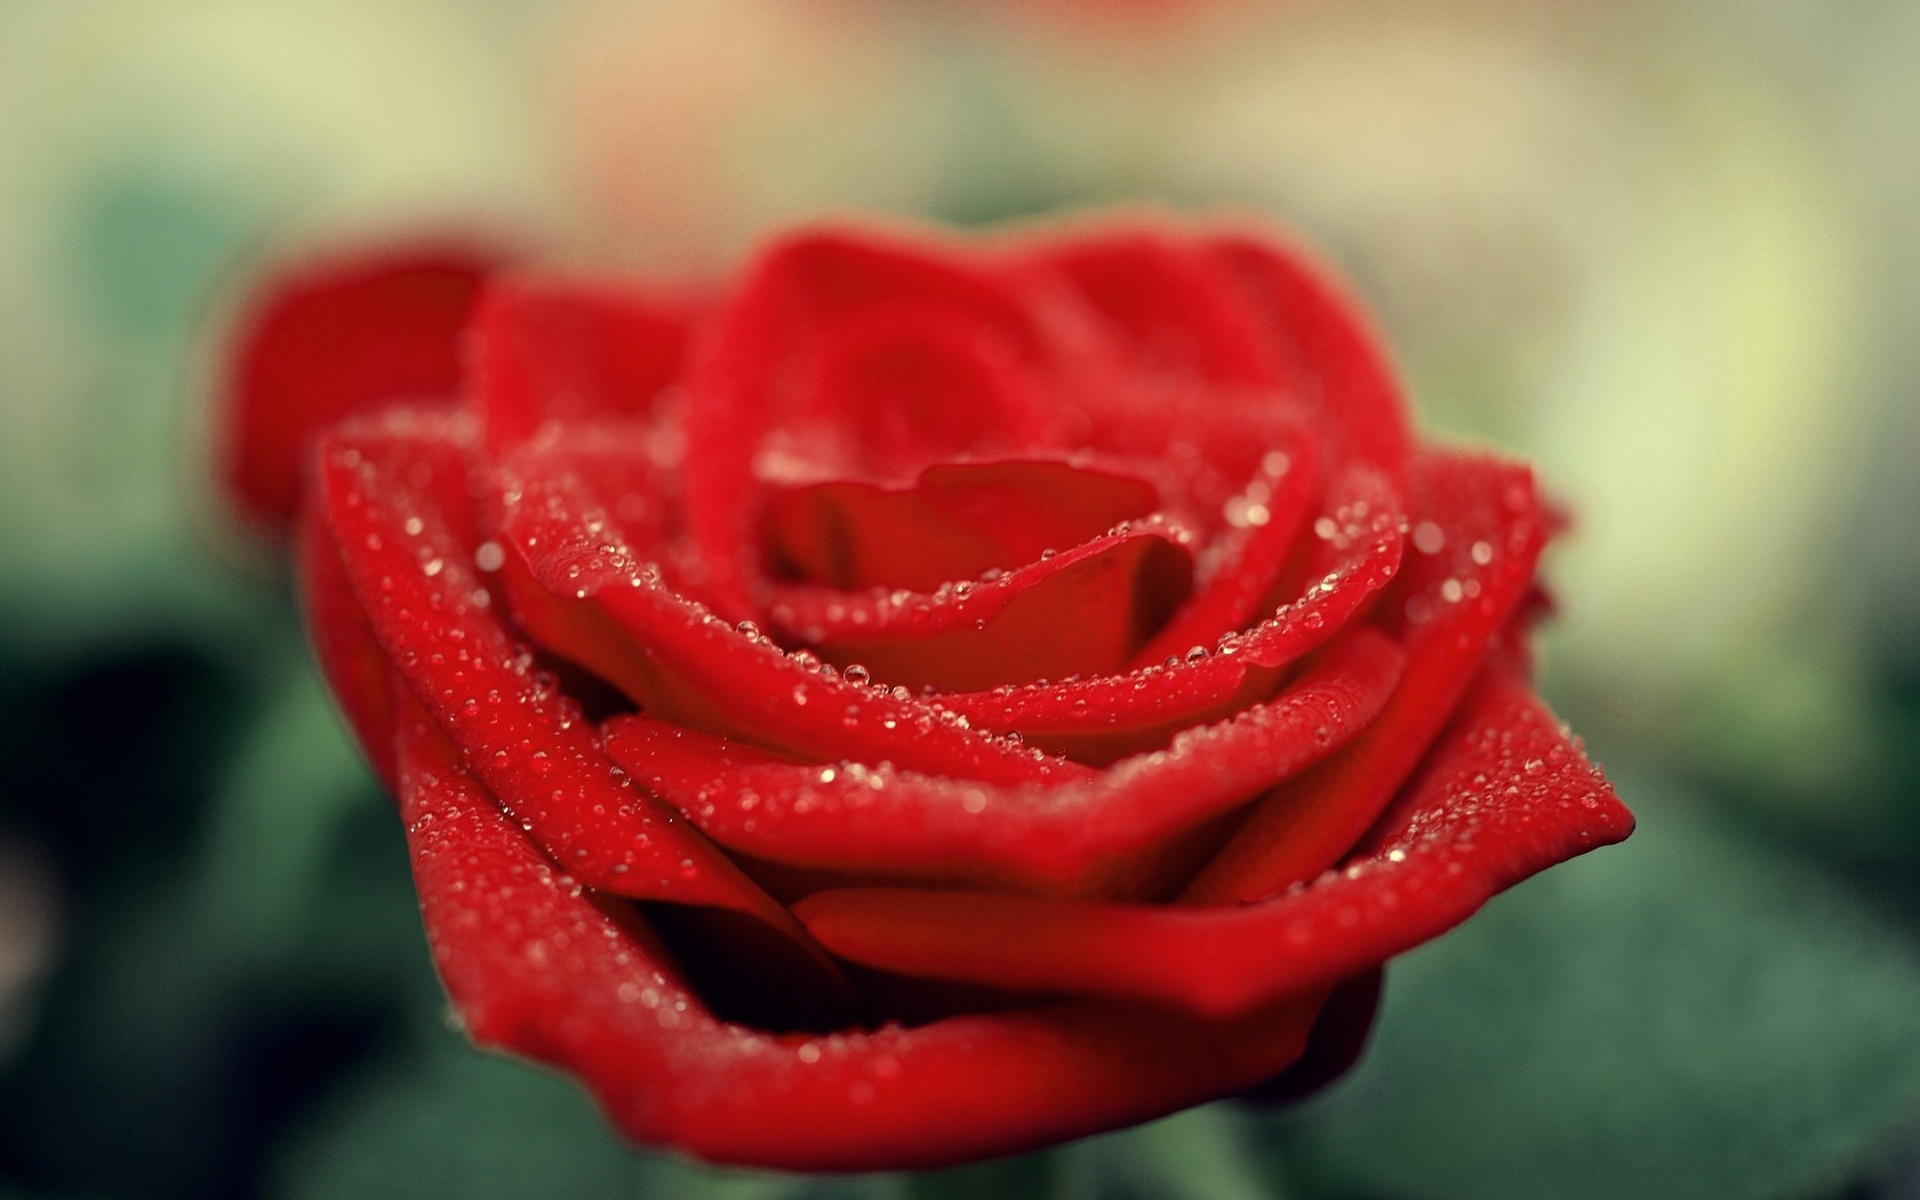 Magnifique rose rouge